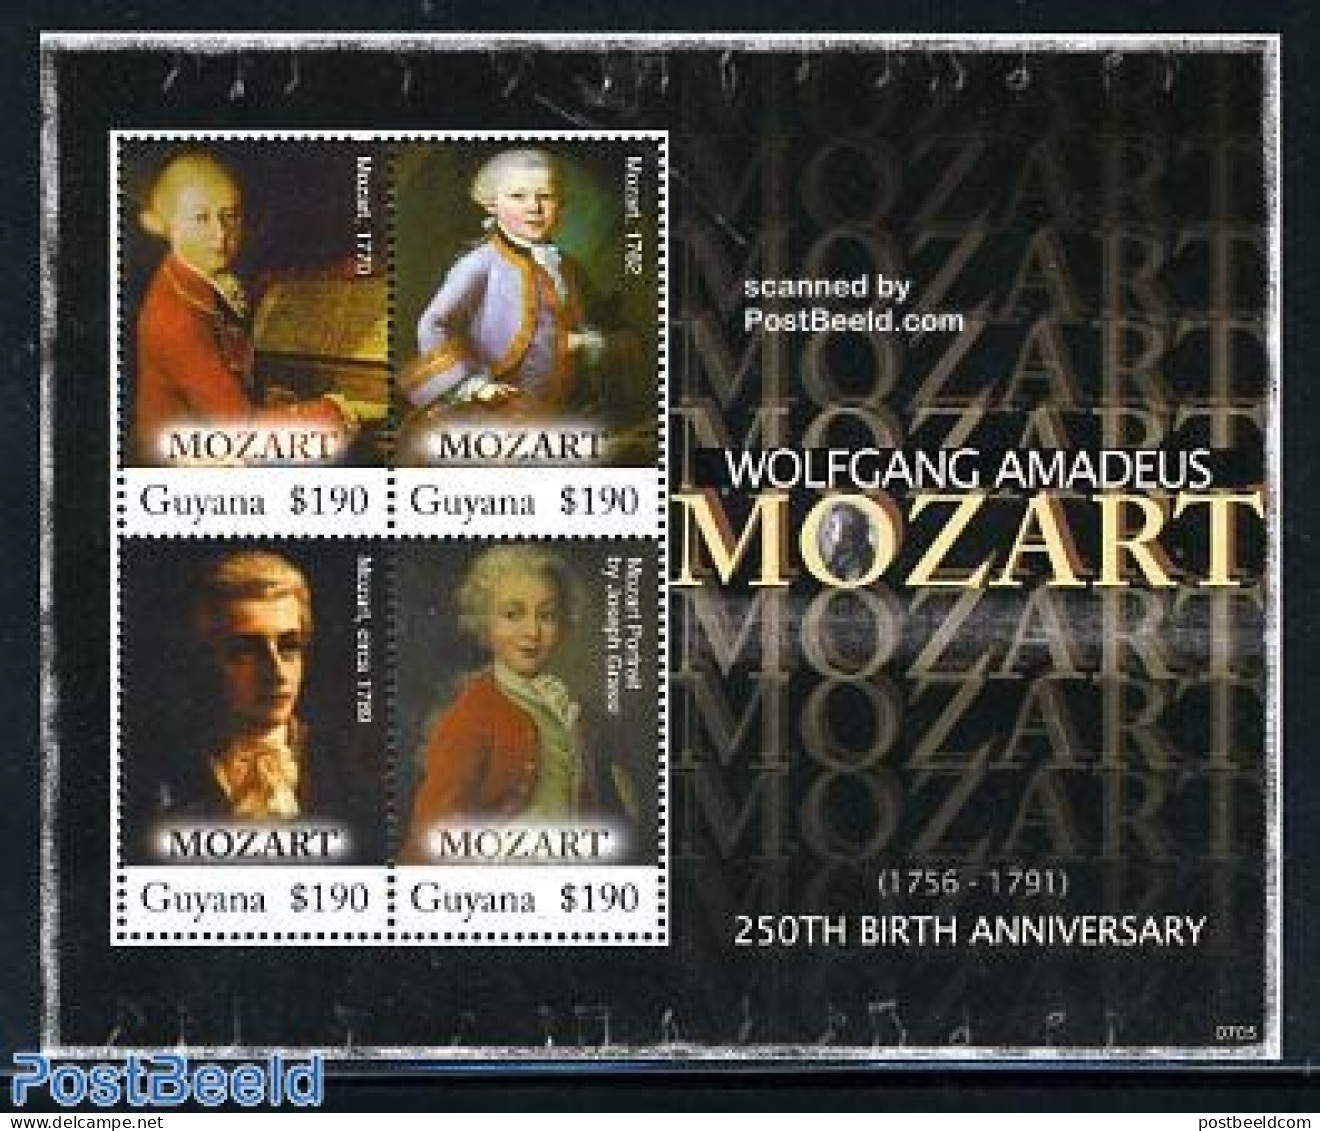 Guyana 2007 W.A. Mozart 4v M/s, Mint NH, Performance Art - Amadeus Mozart - Music - Musique